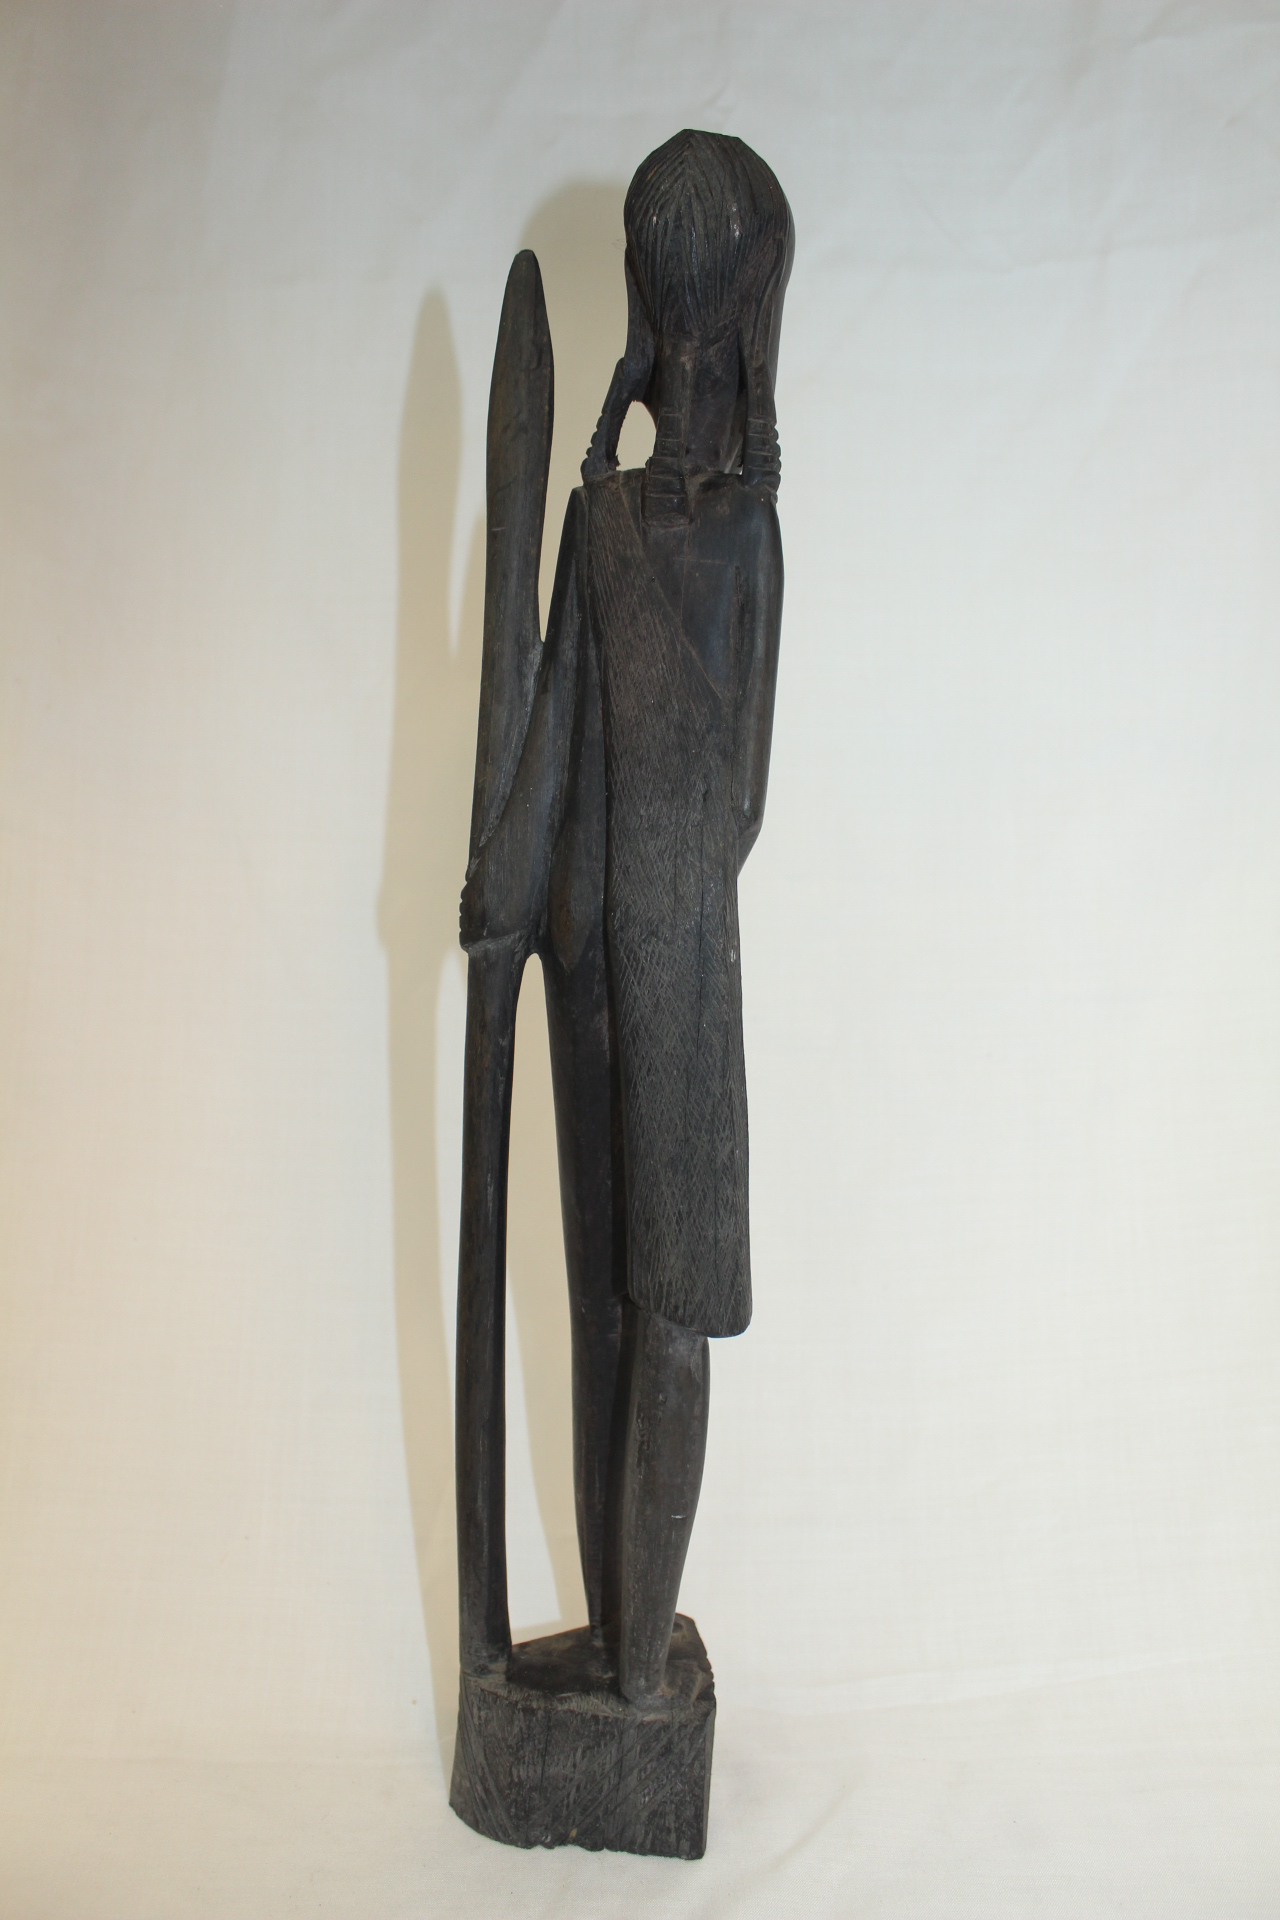 외국산 아주강한 흑단계열의 나무를 조각한 아프리카인물 조각상